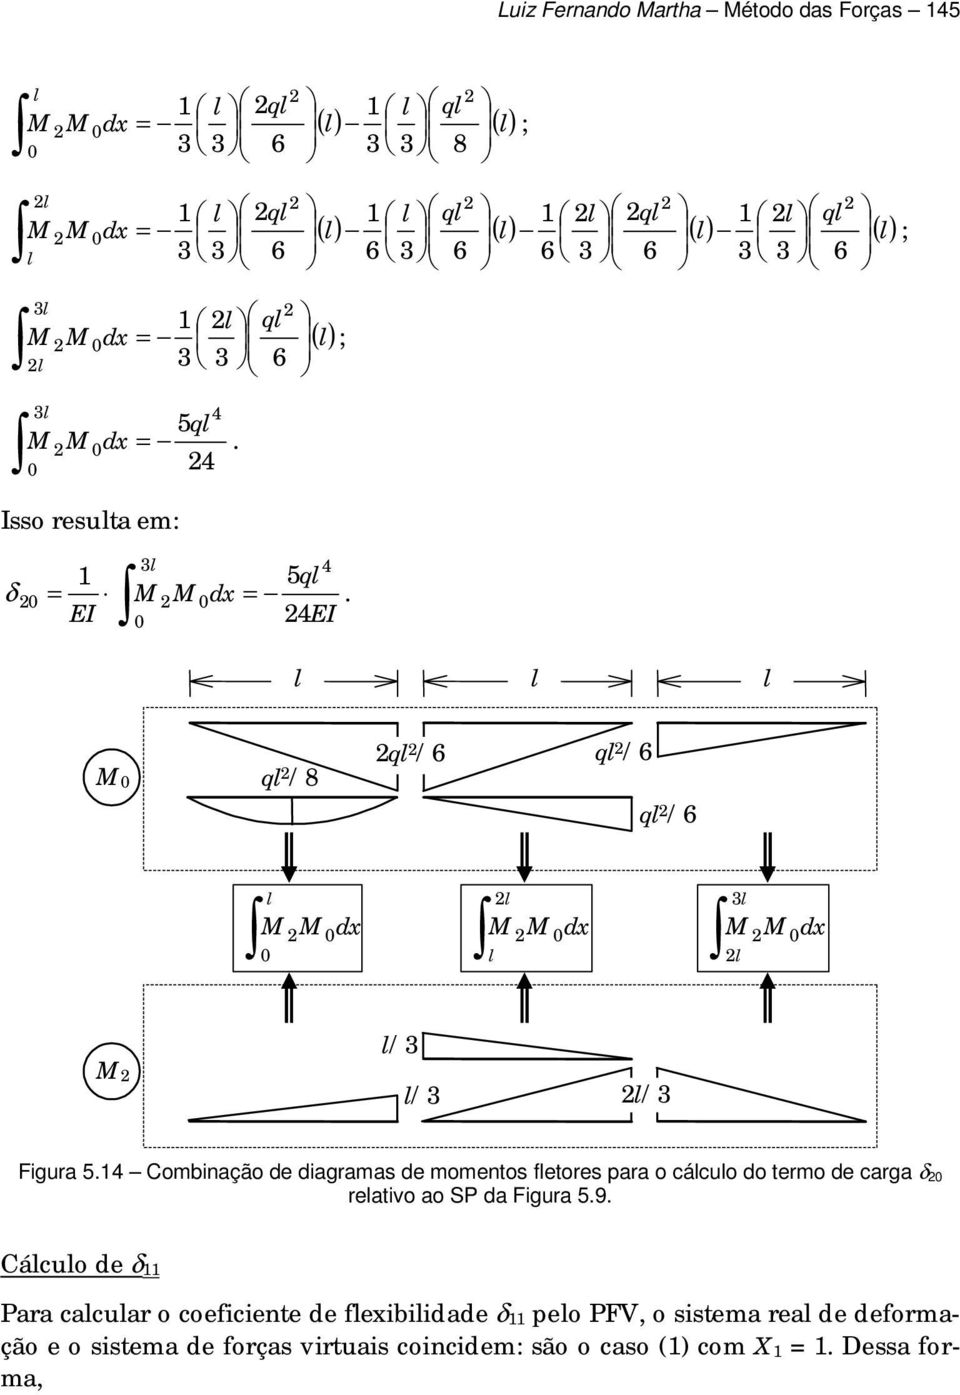 4 Combinação de diagramas de momentos fetores para o cácuo do termo de carga δ reativo ao SP da Figura 5.9.